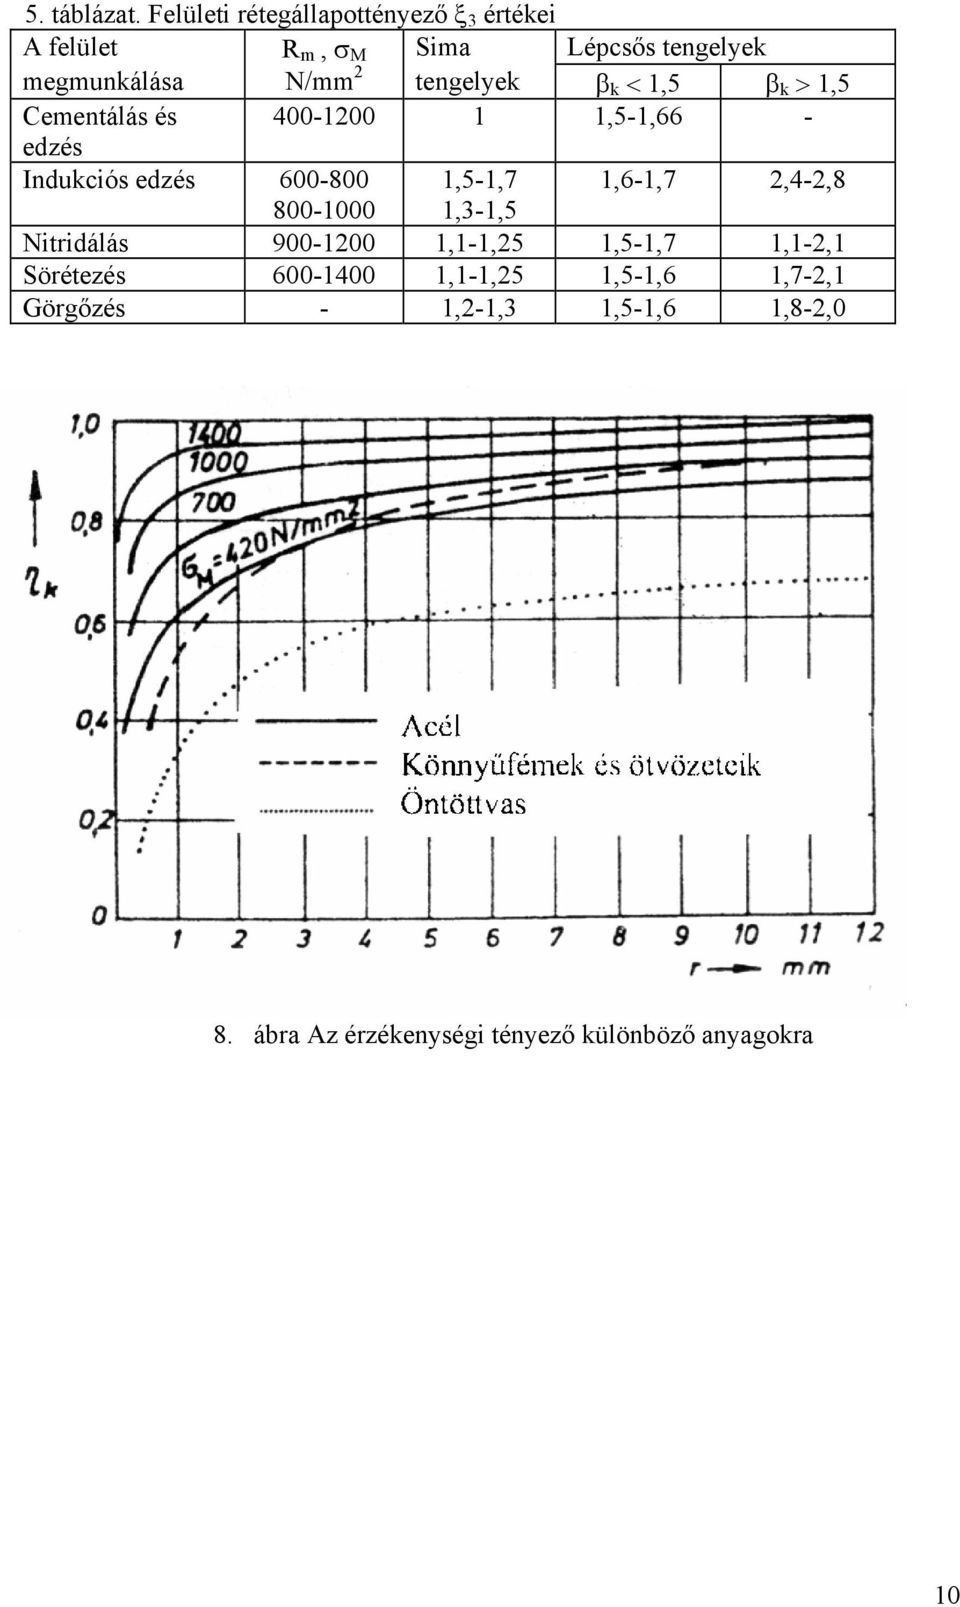 tengelyek β k < 1,5 β k > 1,5 Cementálás és 400-100 1 1,5-1,66 - edzés Indukciós edzés 600-800 1,5-1,7